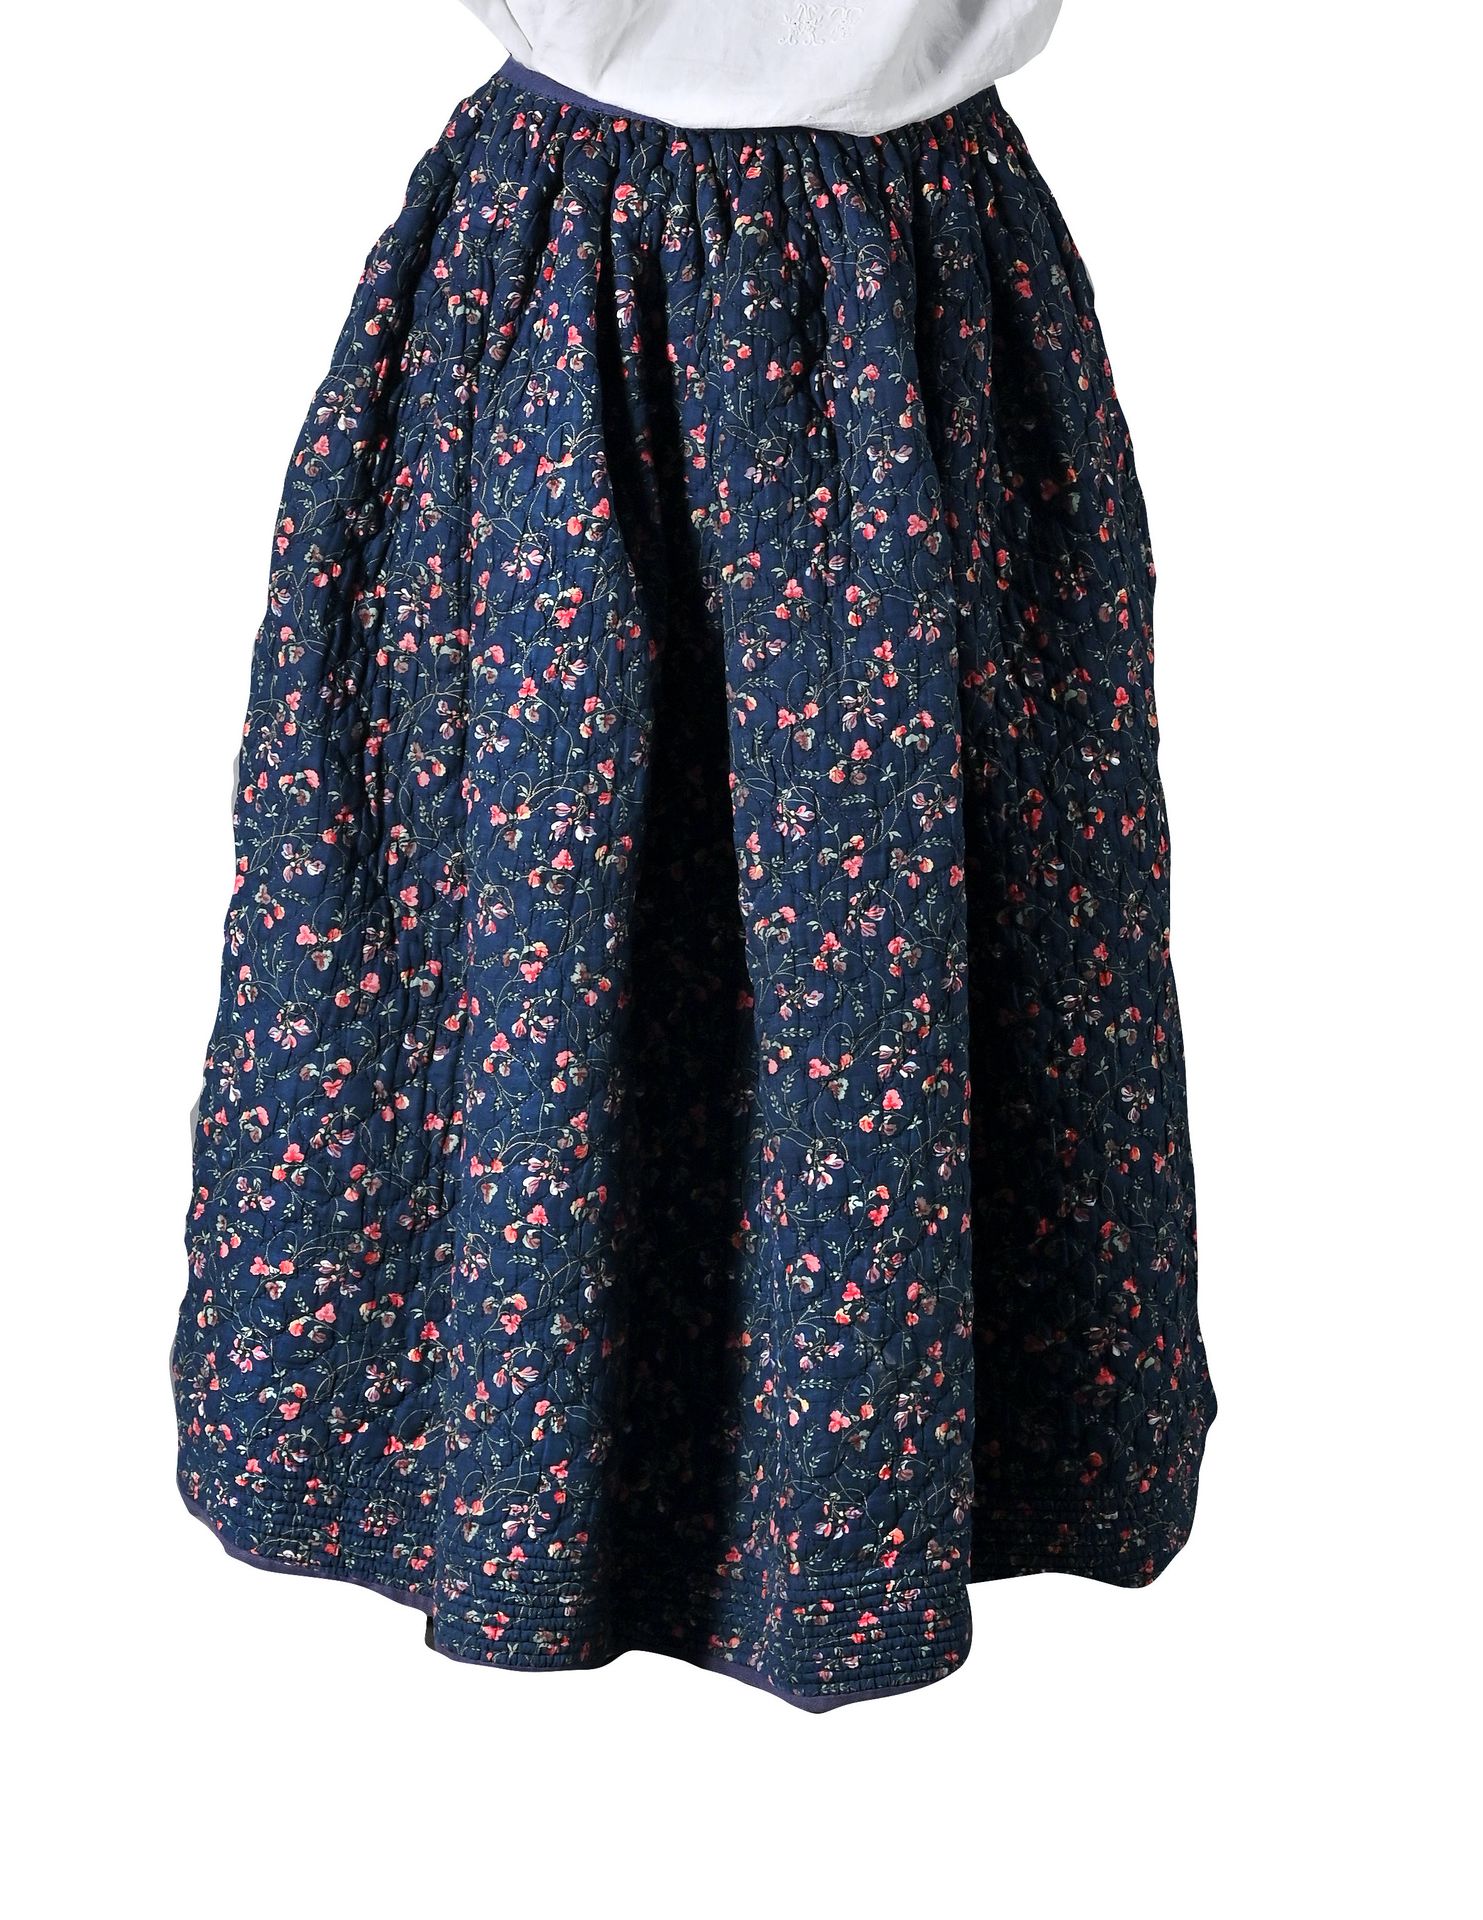 Jupon provençal en indienne, seconde moitié du XIXe siècle 
Petticoat in kleinen&hellip;